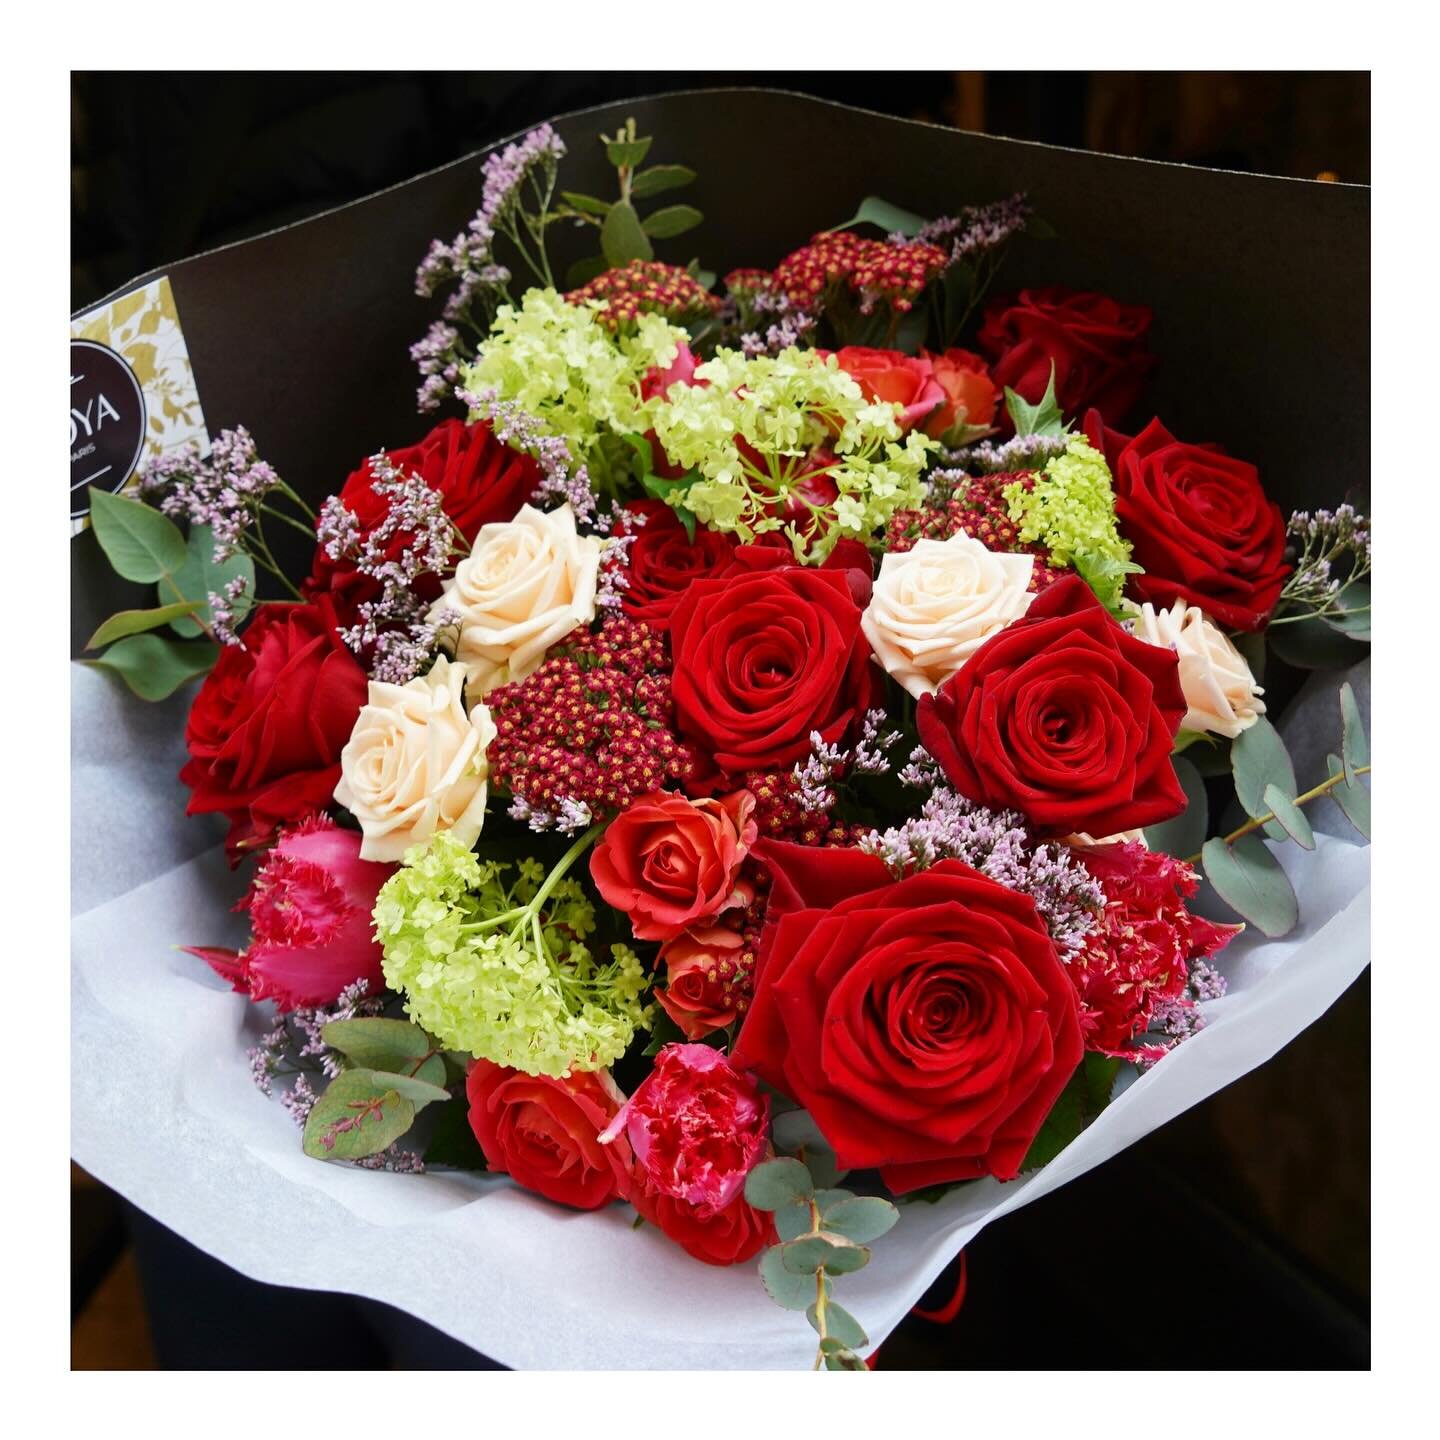 Les bouquets St Valentin sont disponibles sur www.boyaparis.com 
💝 Valentine&rsquo;s day pre-orders are now open